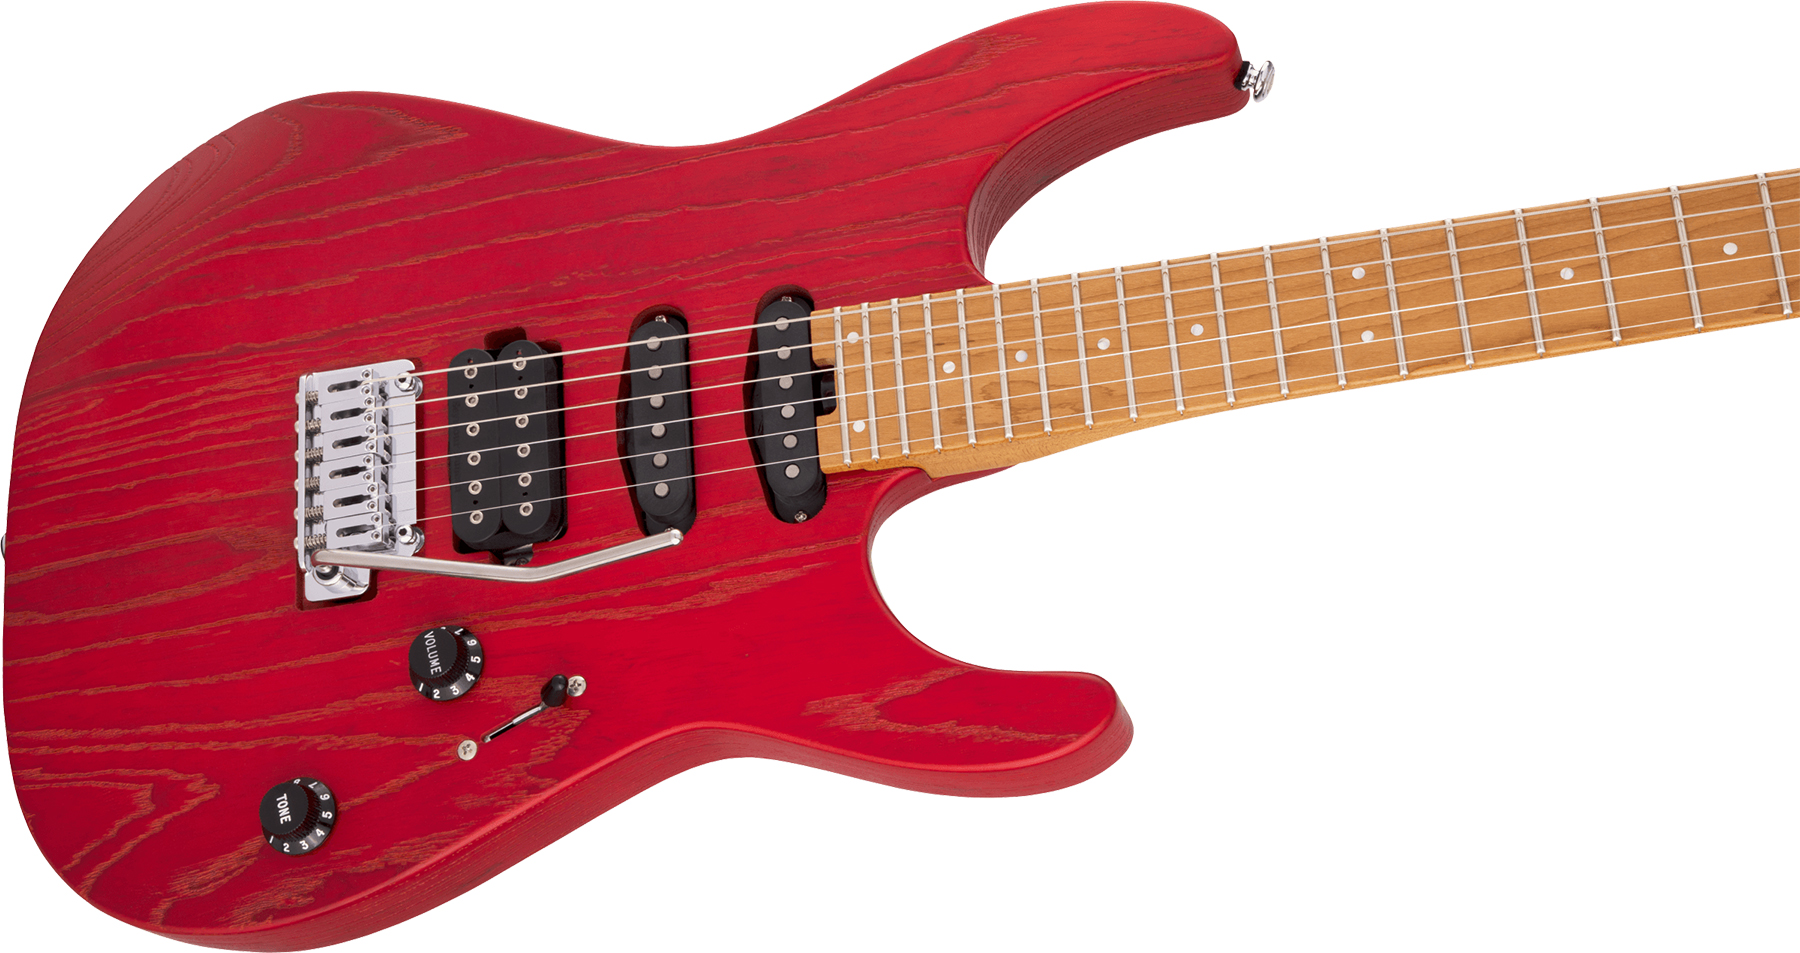 Charvel Dinky Dk24 Hss 2pt Cm Ash Pro-mod Seymour Duncan Trem Mn - Red Ash - Str shape electric guitar - Variation 2